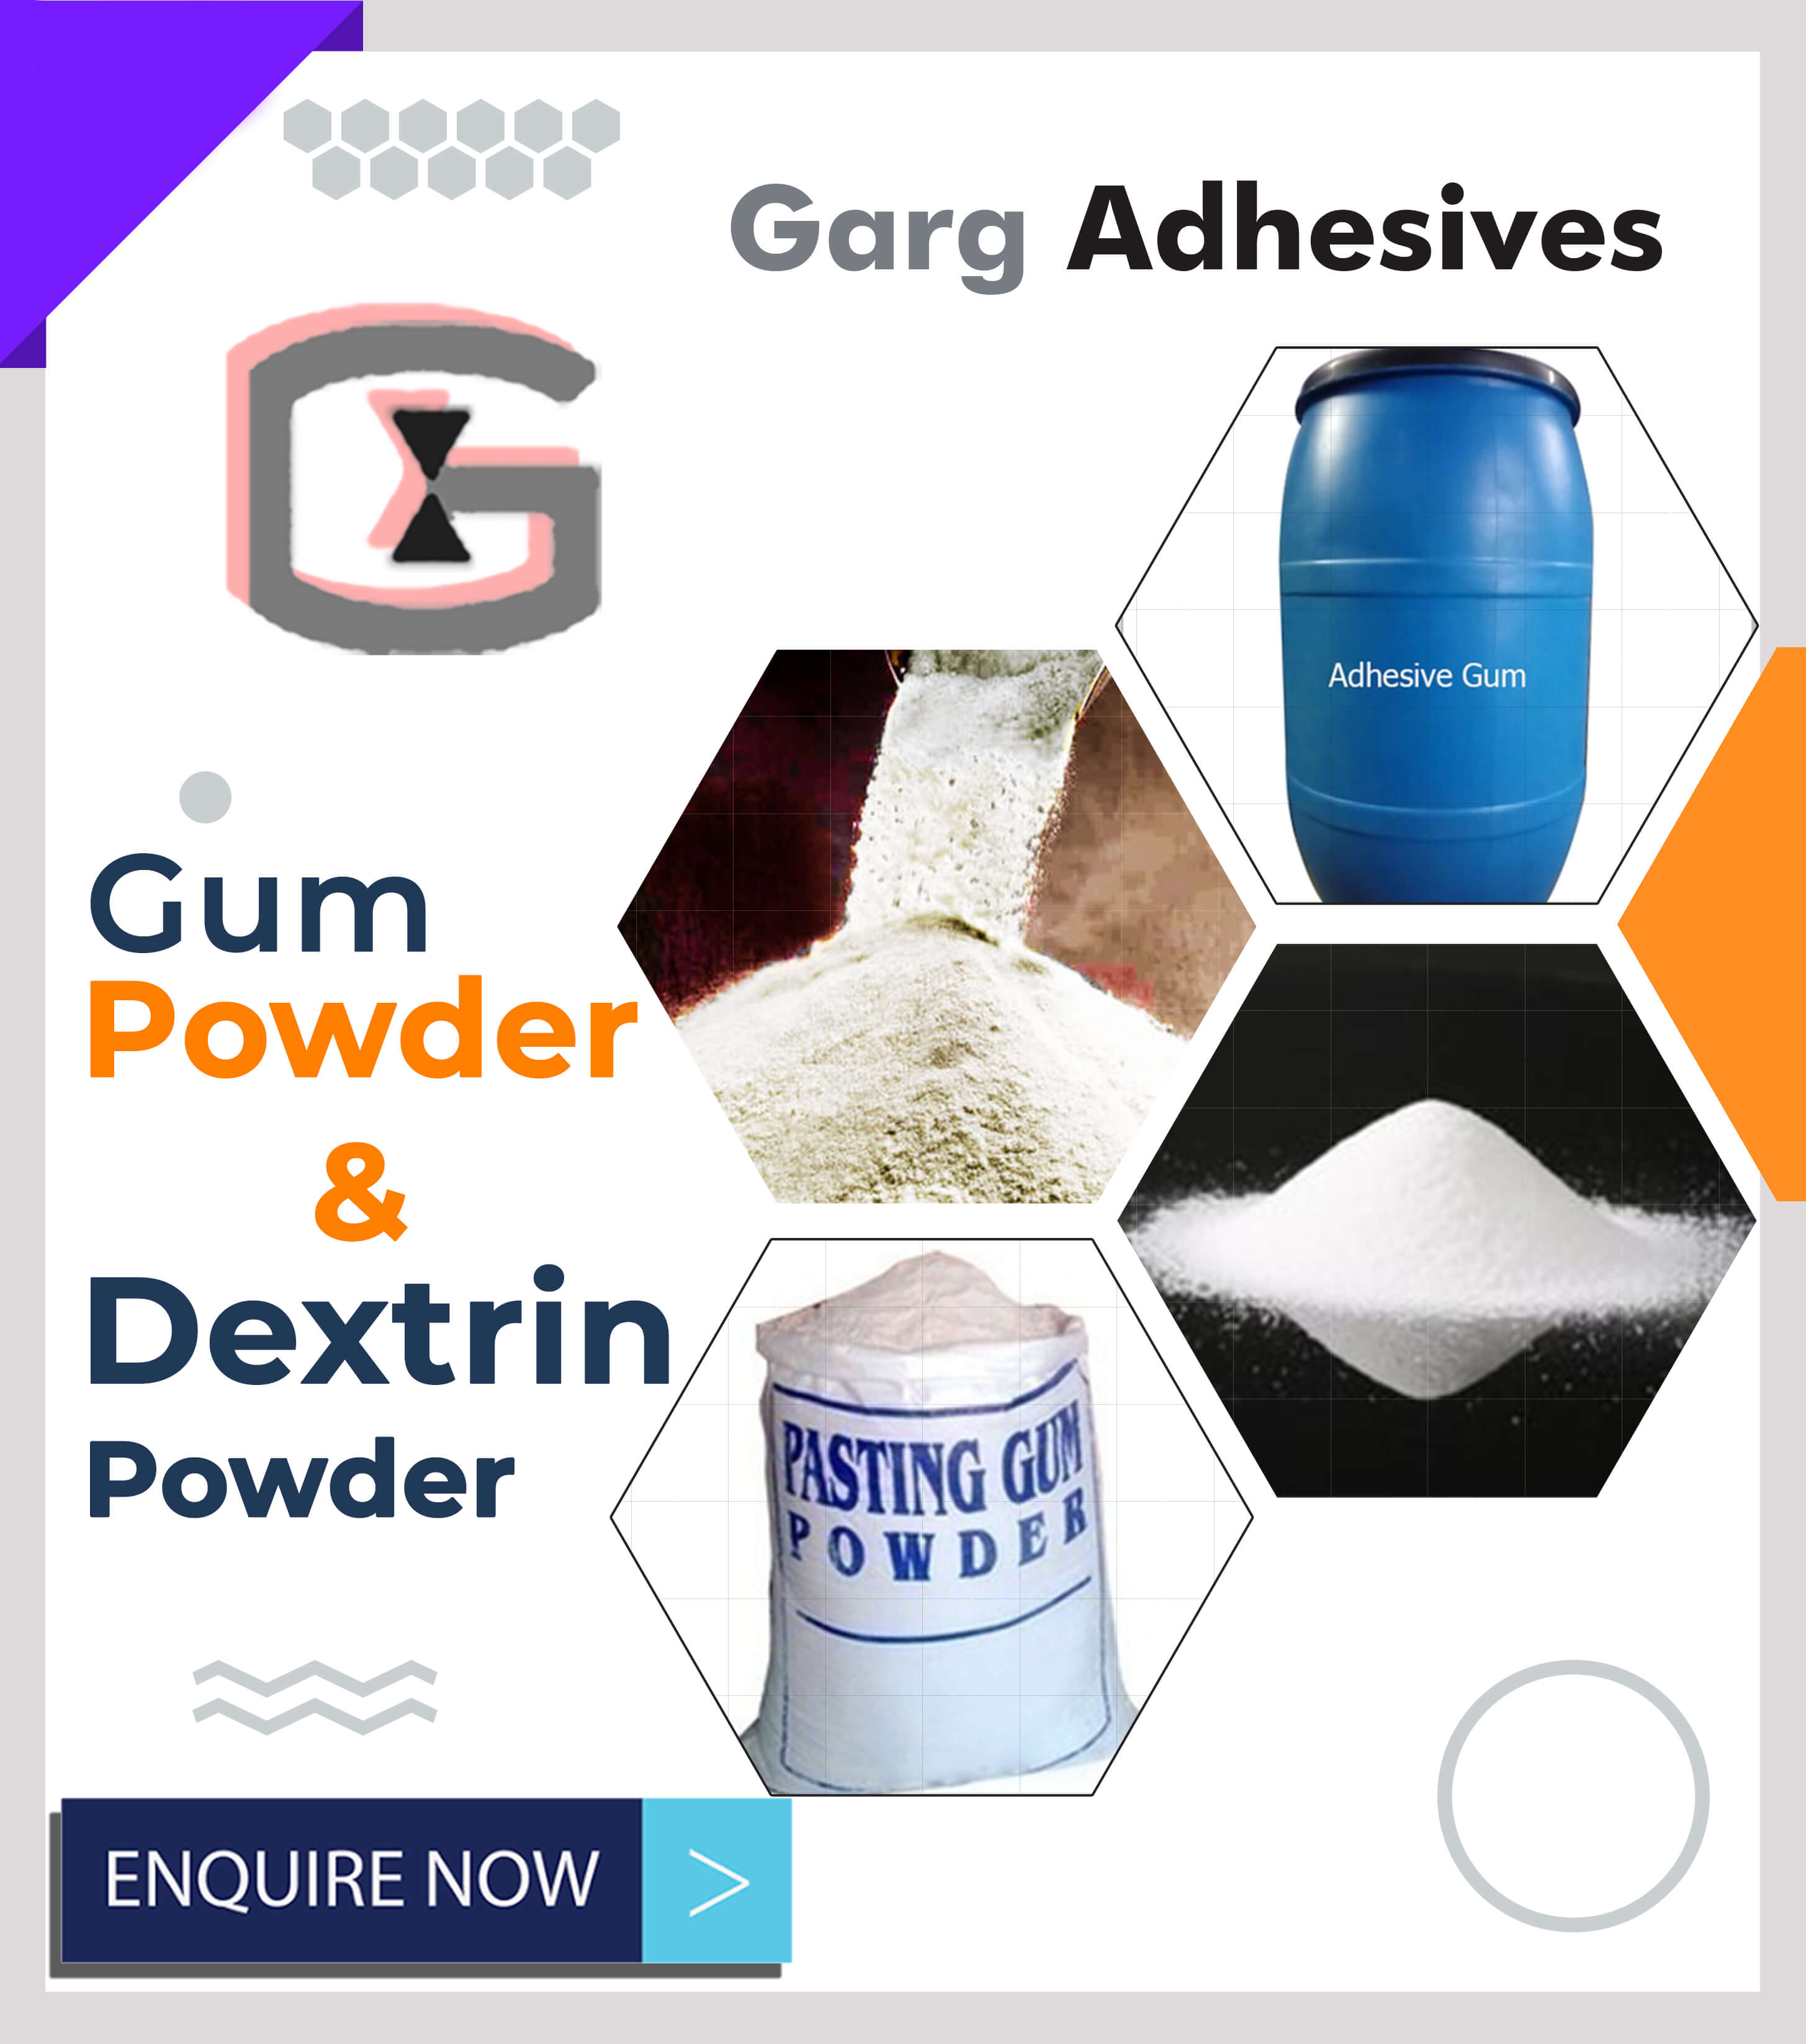 Garg adhesives